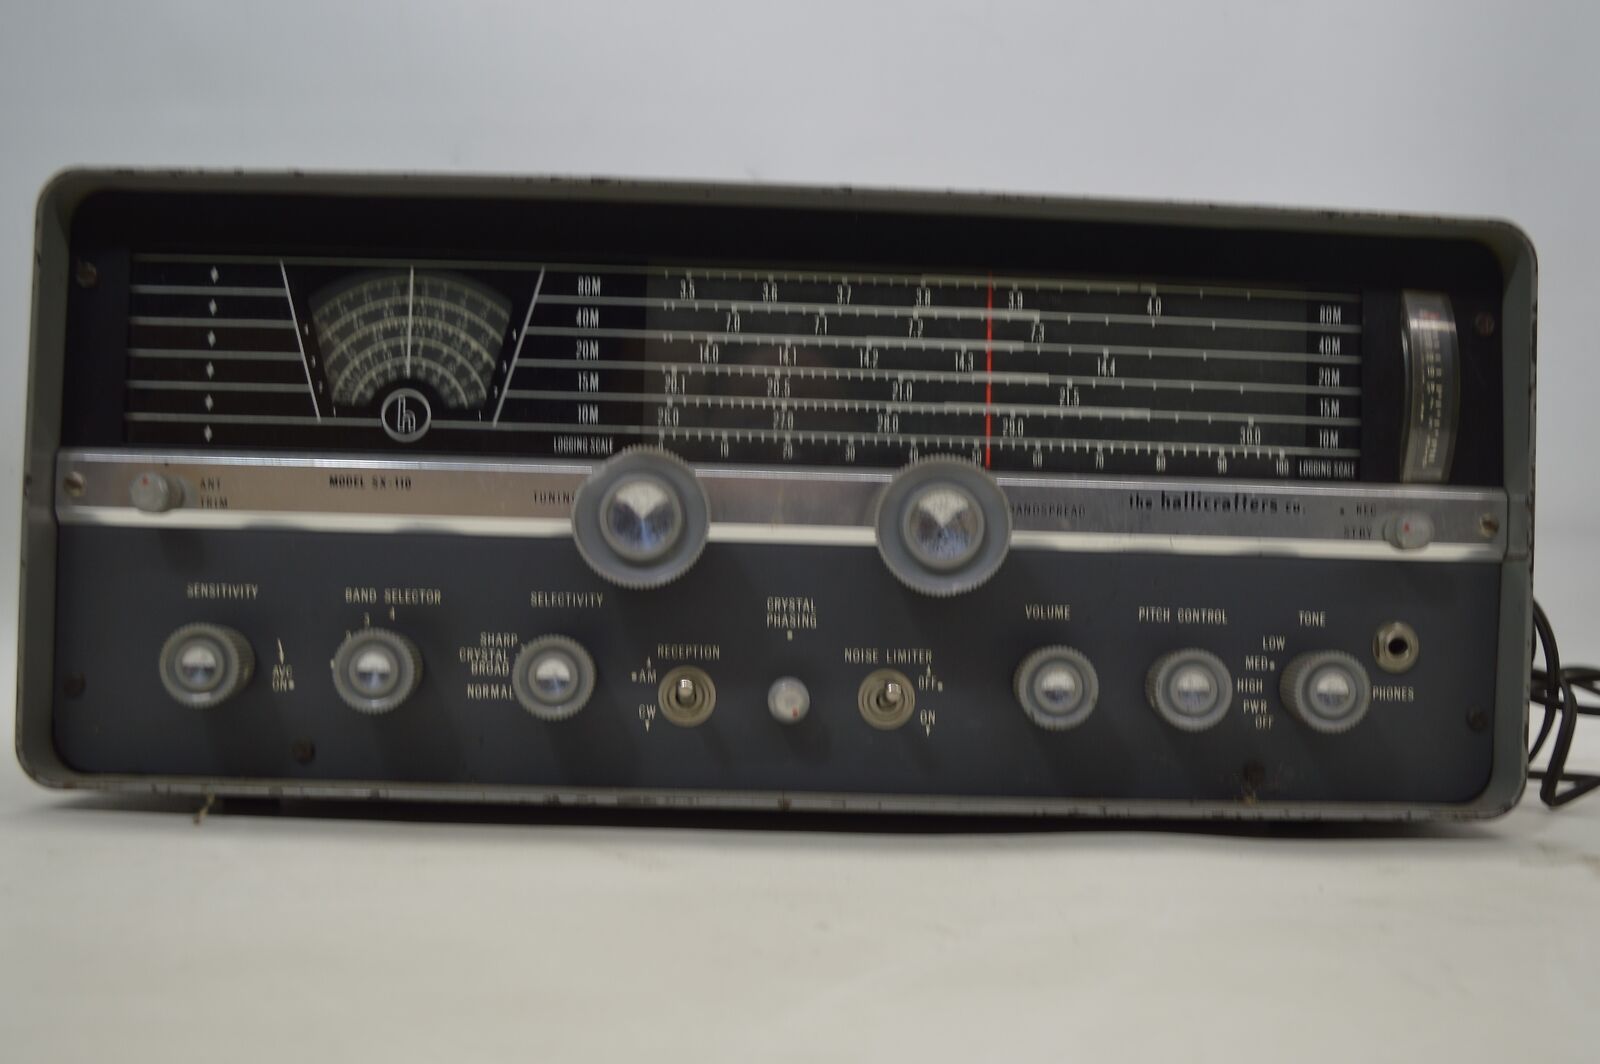 Vintage Hallicrafters Sx-110 Ham Radio Shortwave Receiver